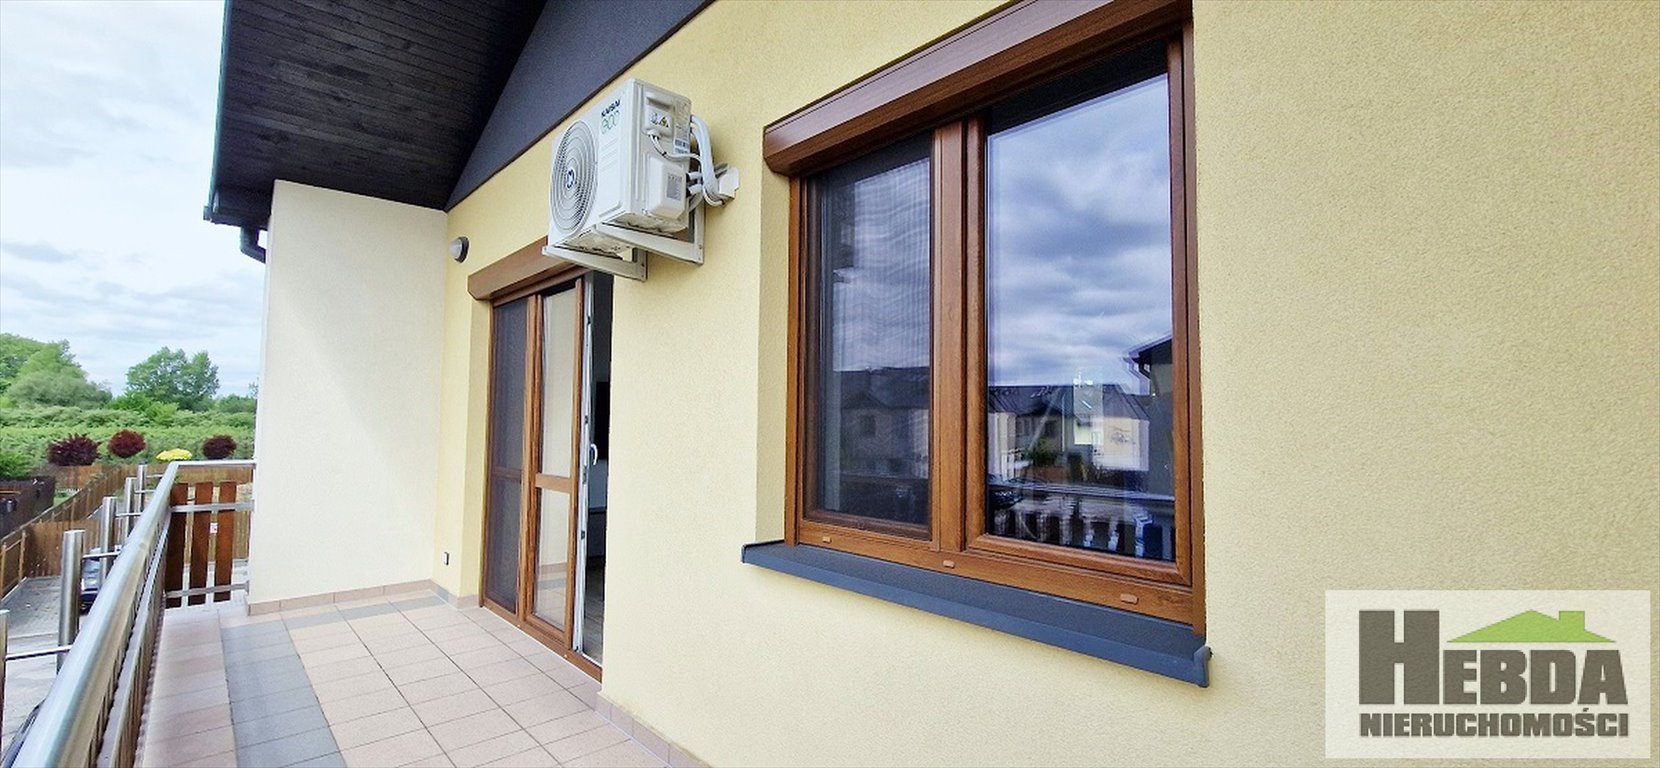 Mieszkanie trzypokojowe na wynajem Tarnów, Klikowska  52m2 Foto 4